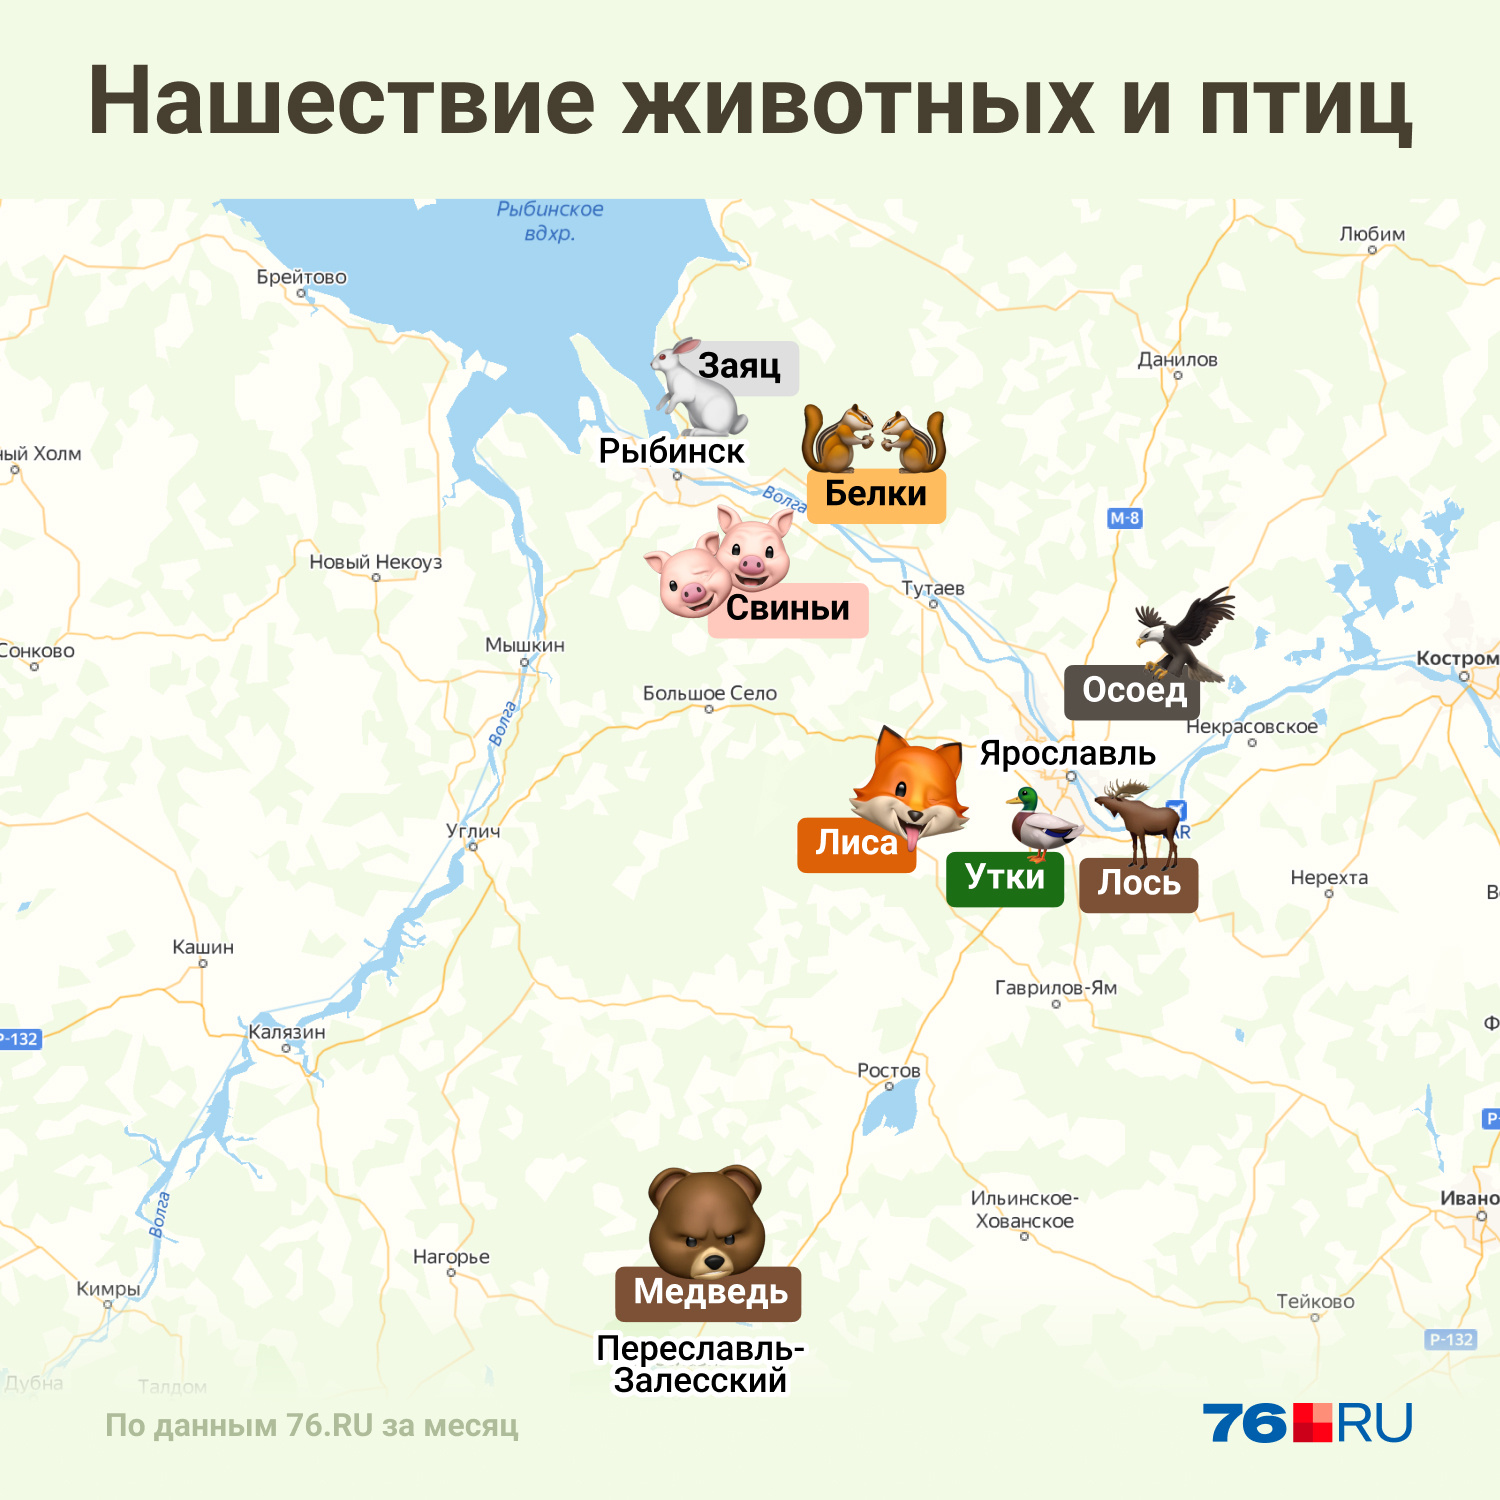 Каких животных видели весной в Ярославской области